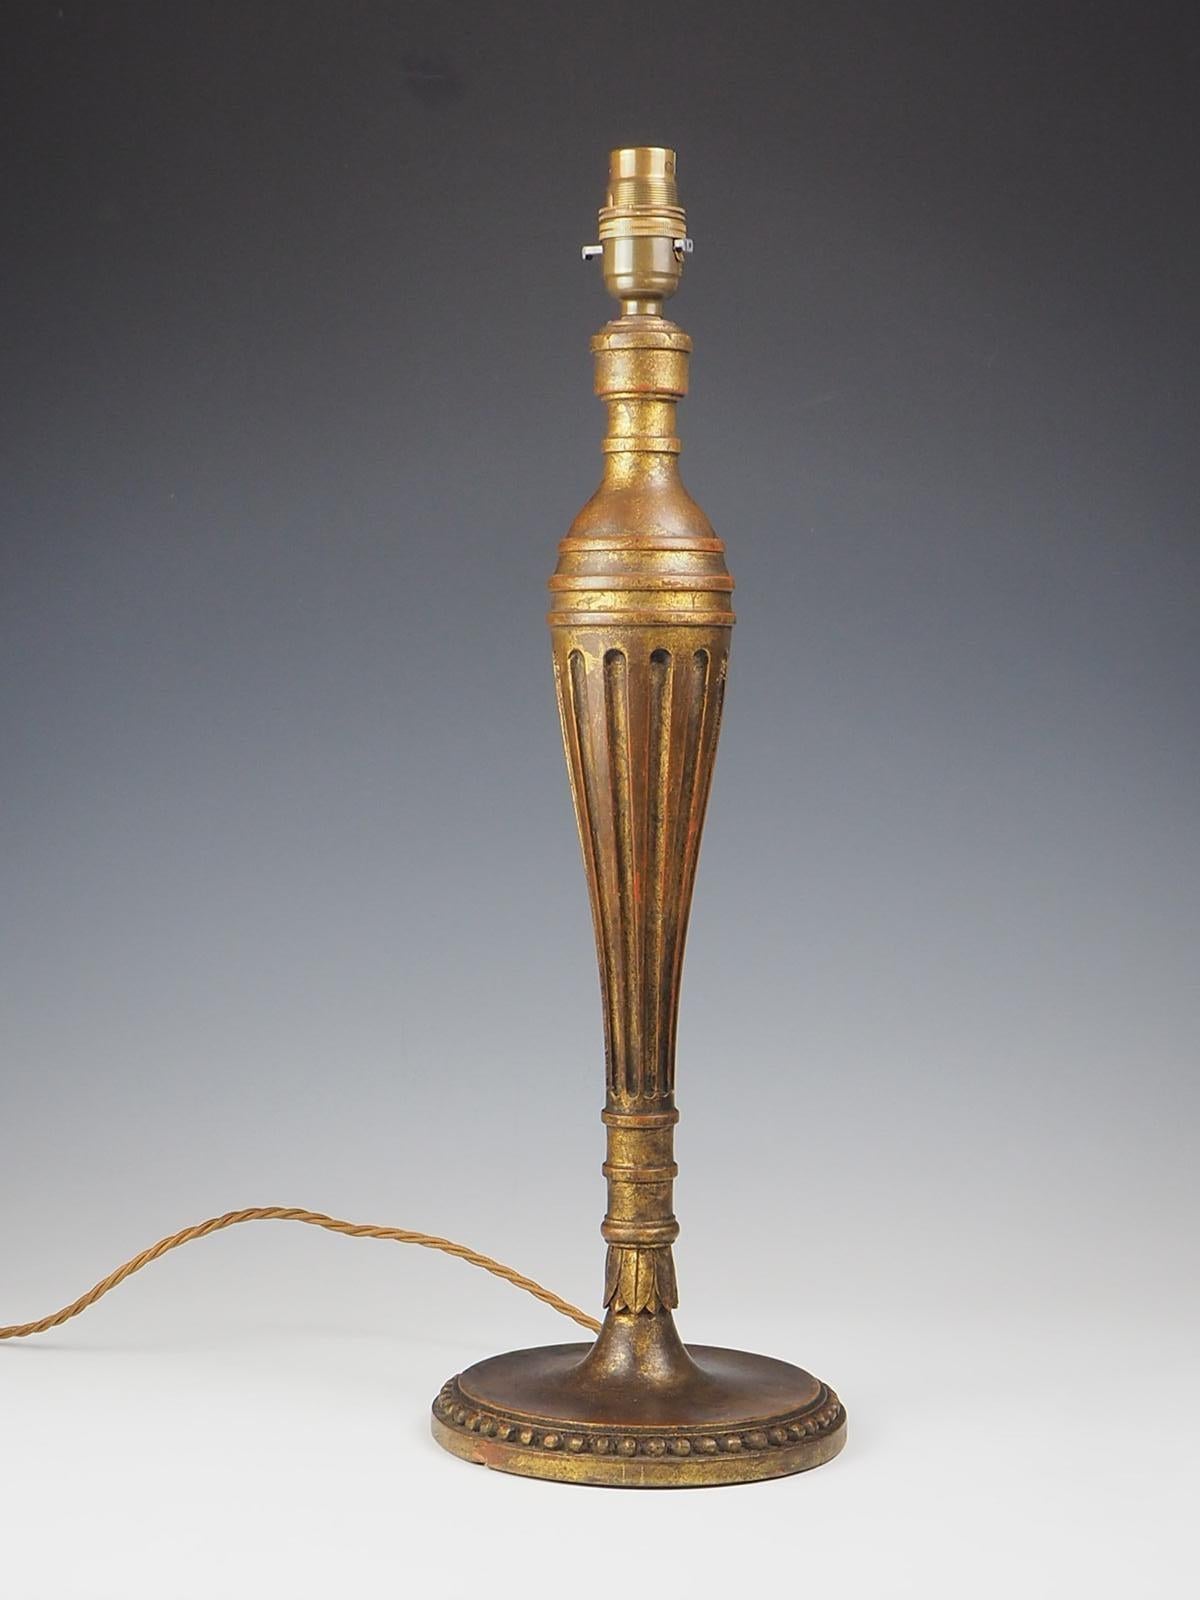 Lampe de table en bois doré polychrome sculpté du XIXe siècle, une pièce vraiment exquise qui respire l'élégance et la sophistication. Fabriquée avec une attention méticuleuse aux détails, cette lampe présente une superbe base en bois sculpté qui a